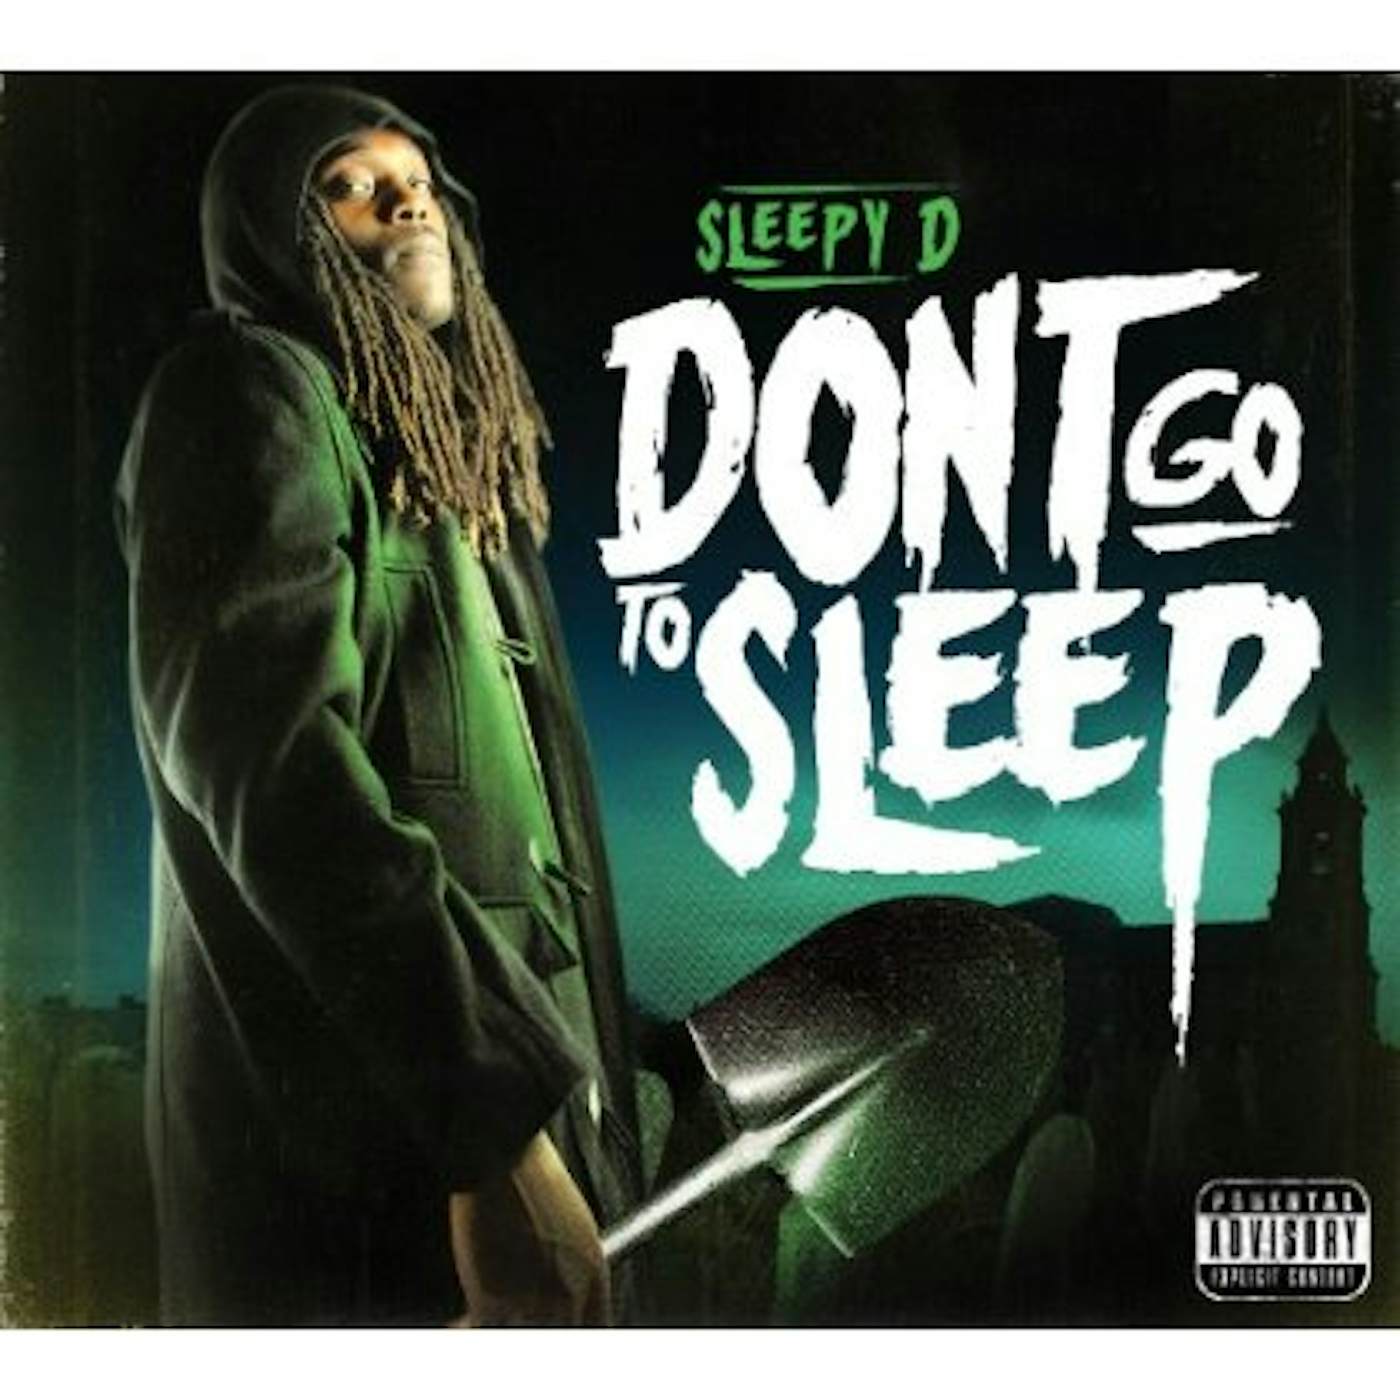 Sleepy D DON'T GO TO SLEEP CD